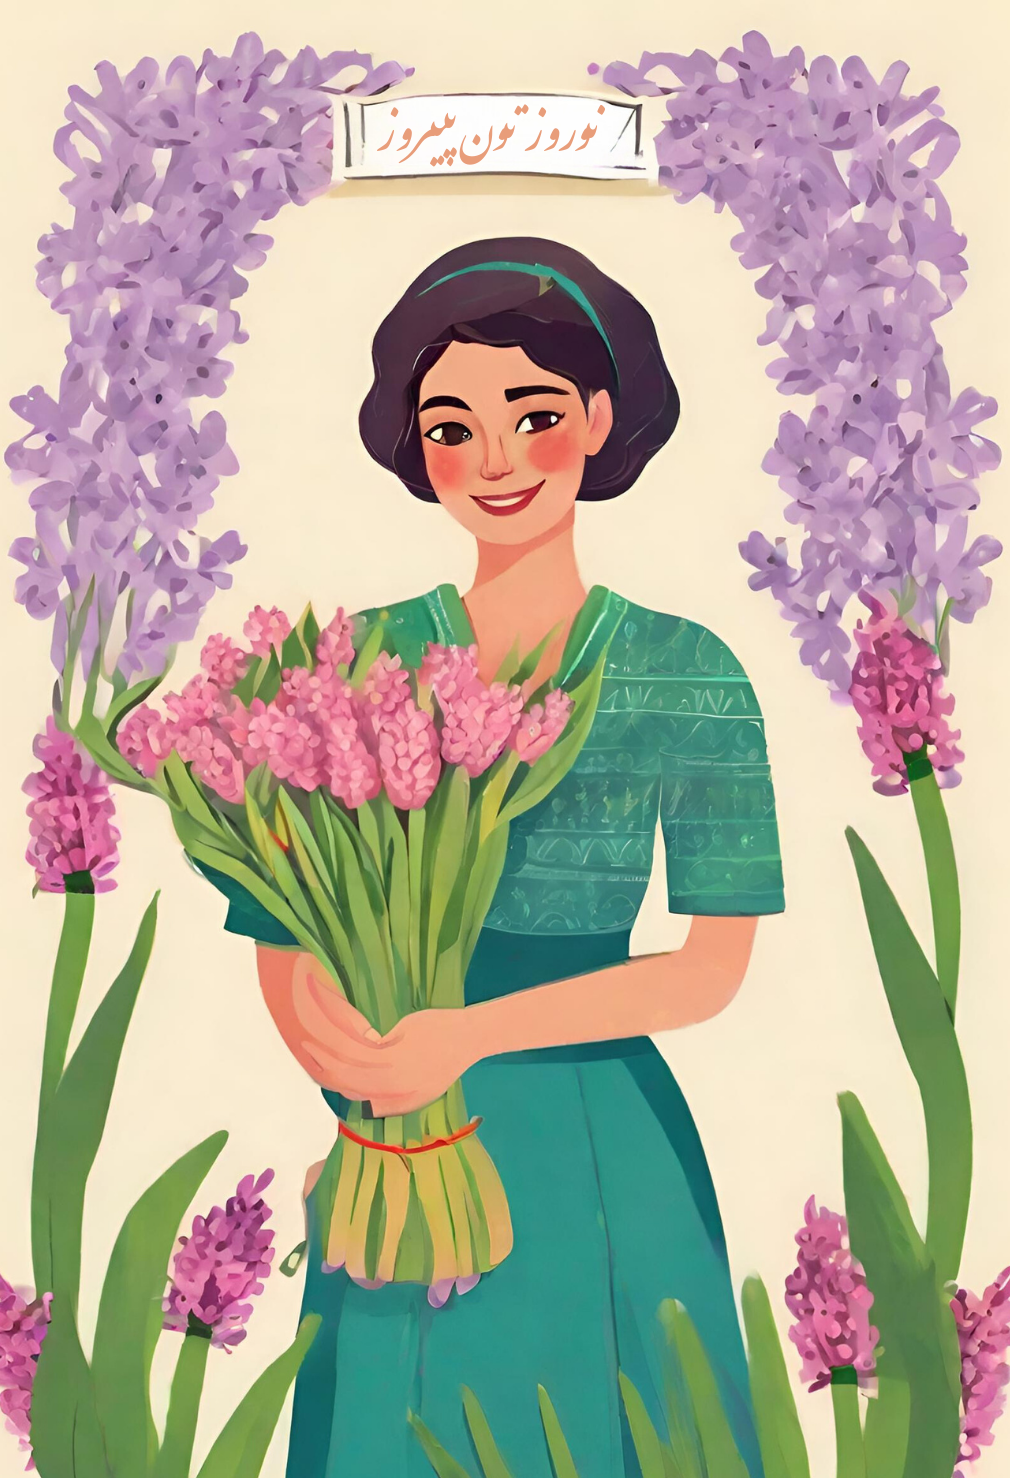 کارت پستال نوروزی | Nowruz greetings card